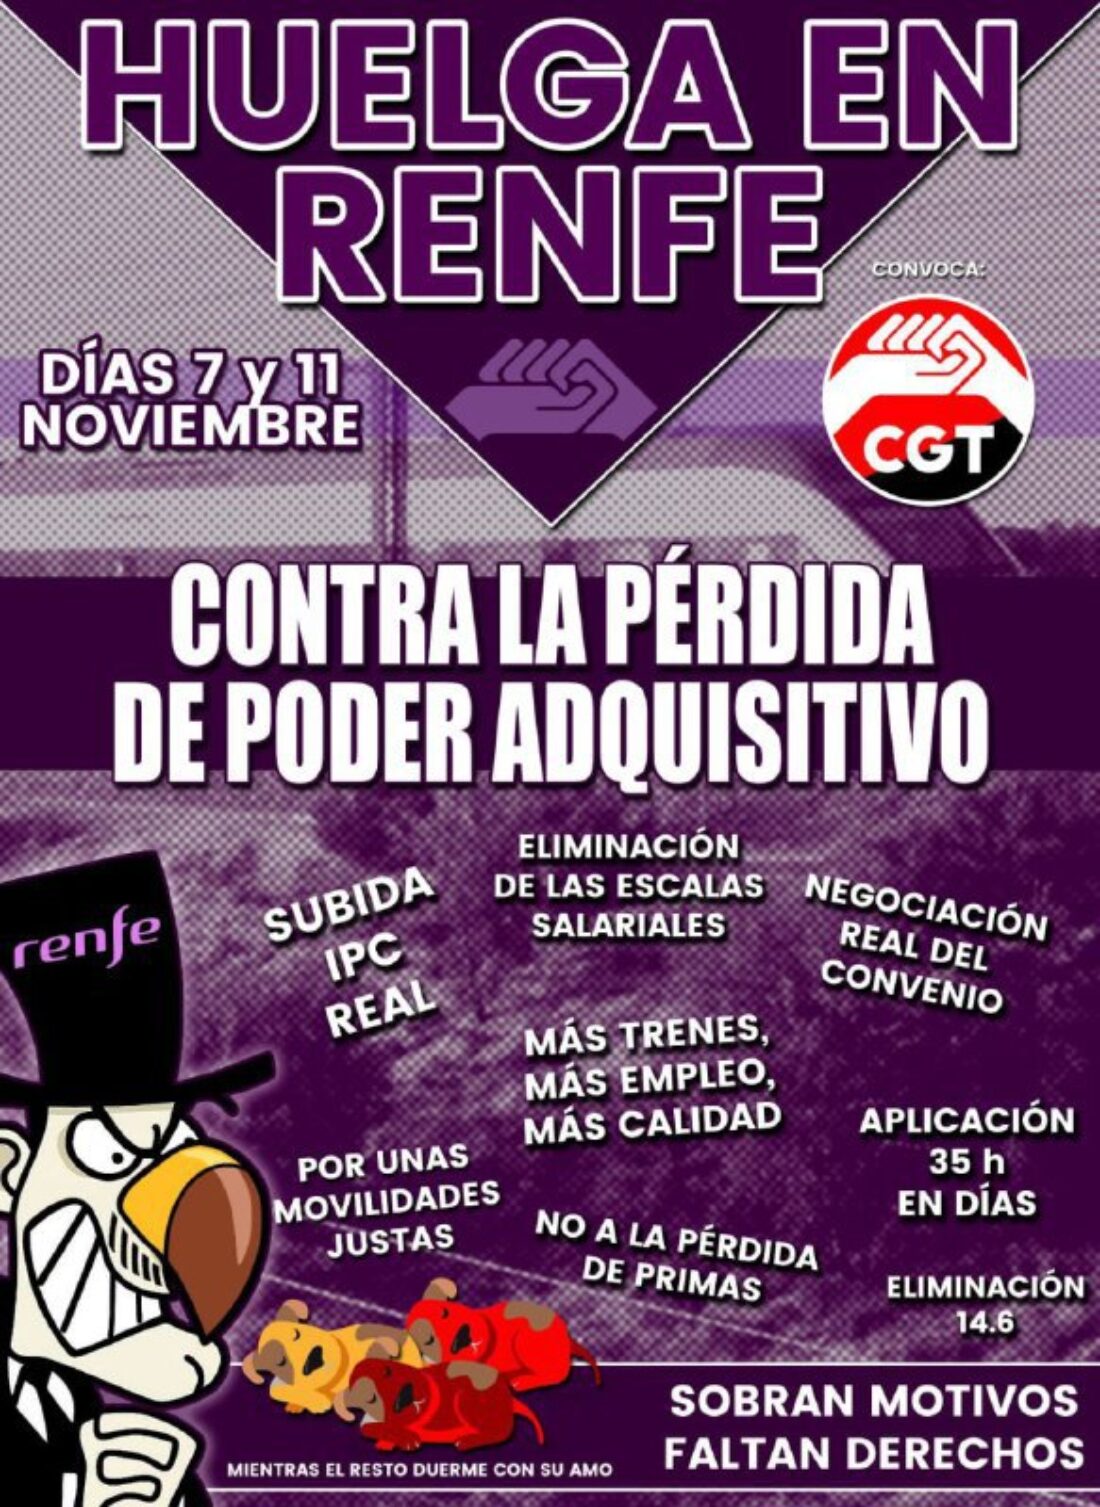 CGT convoca huelgas en RENFE para los días 7 y 11 de noviembre